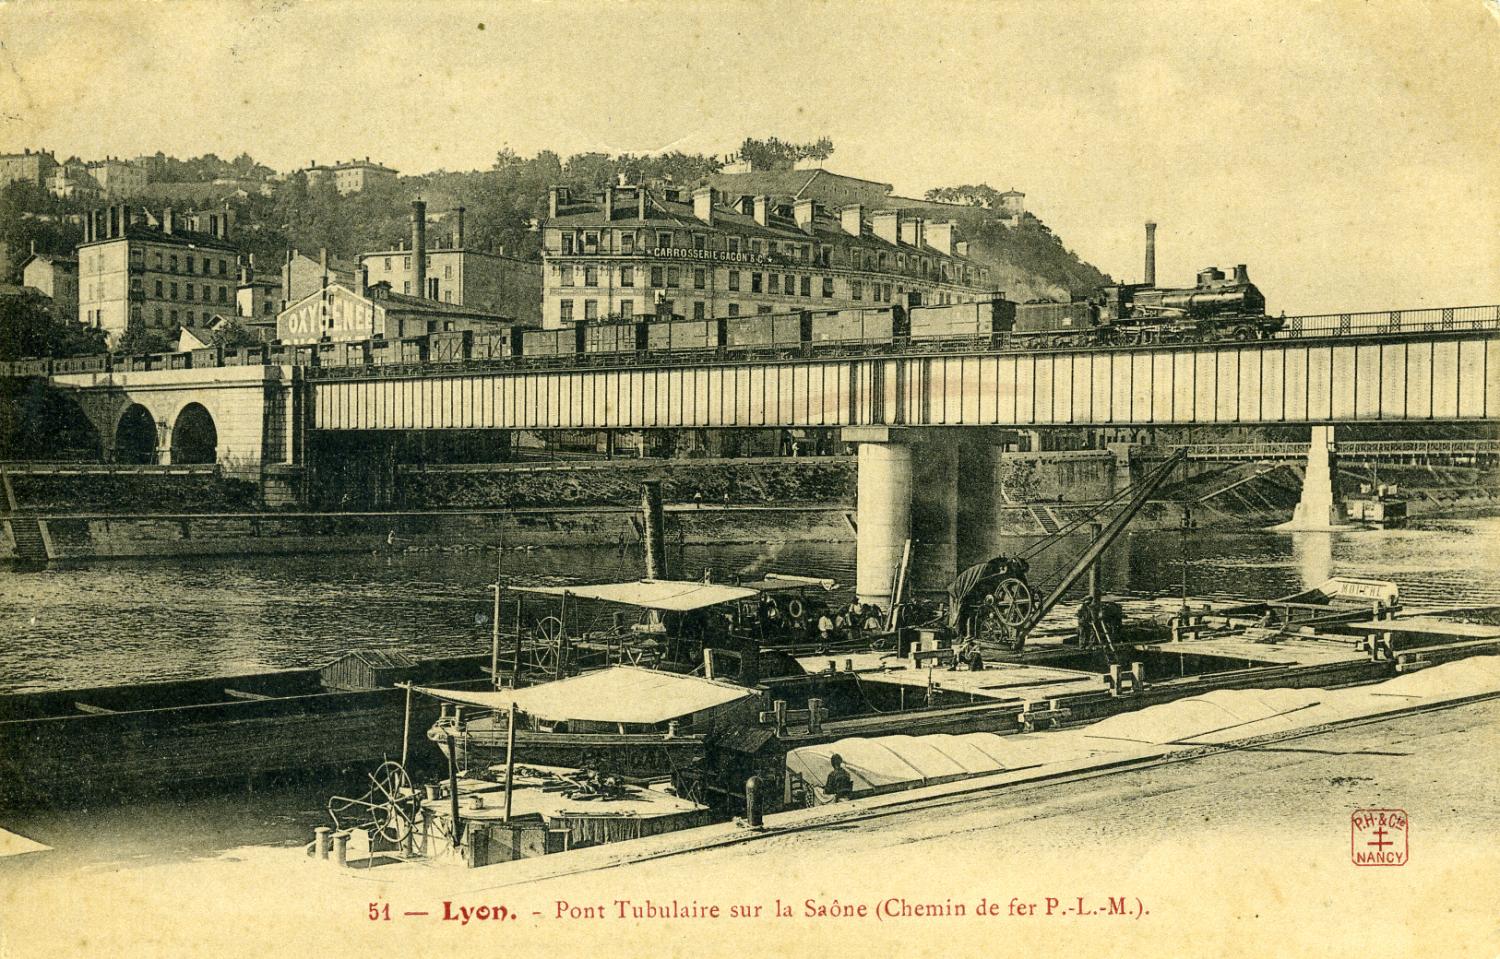 LYON. - Pont tubulaire sur la Saône (chemin de fer P.-L.-M.).